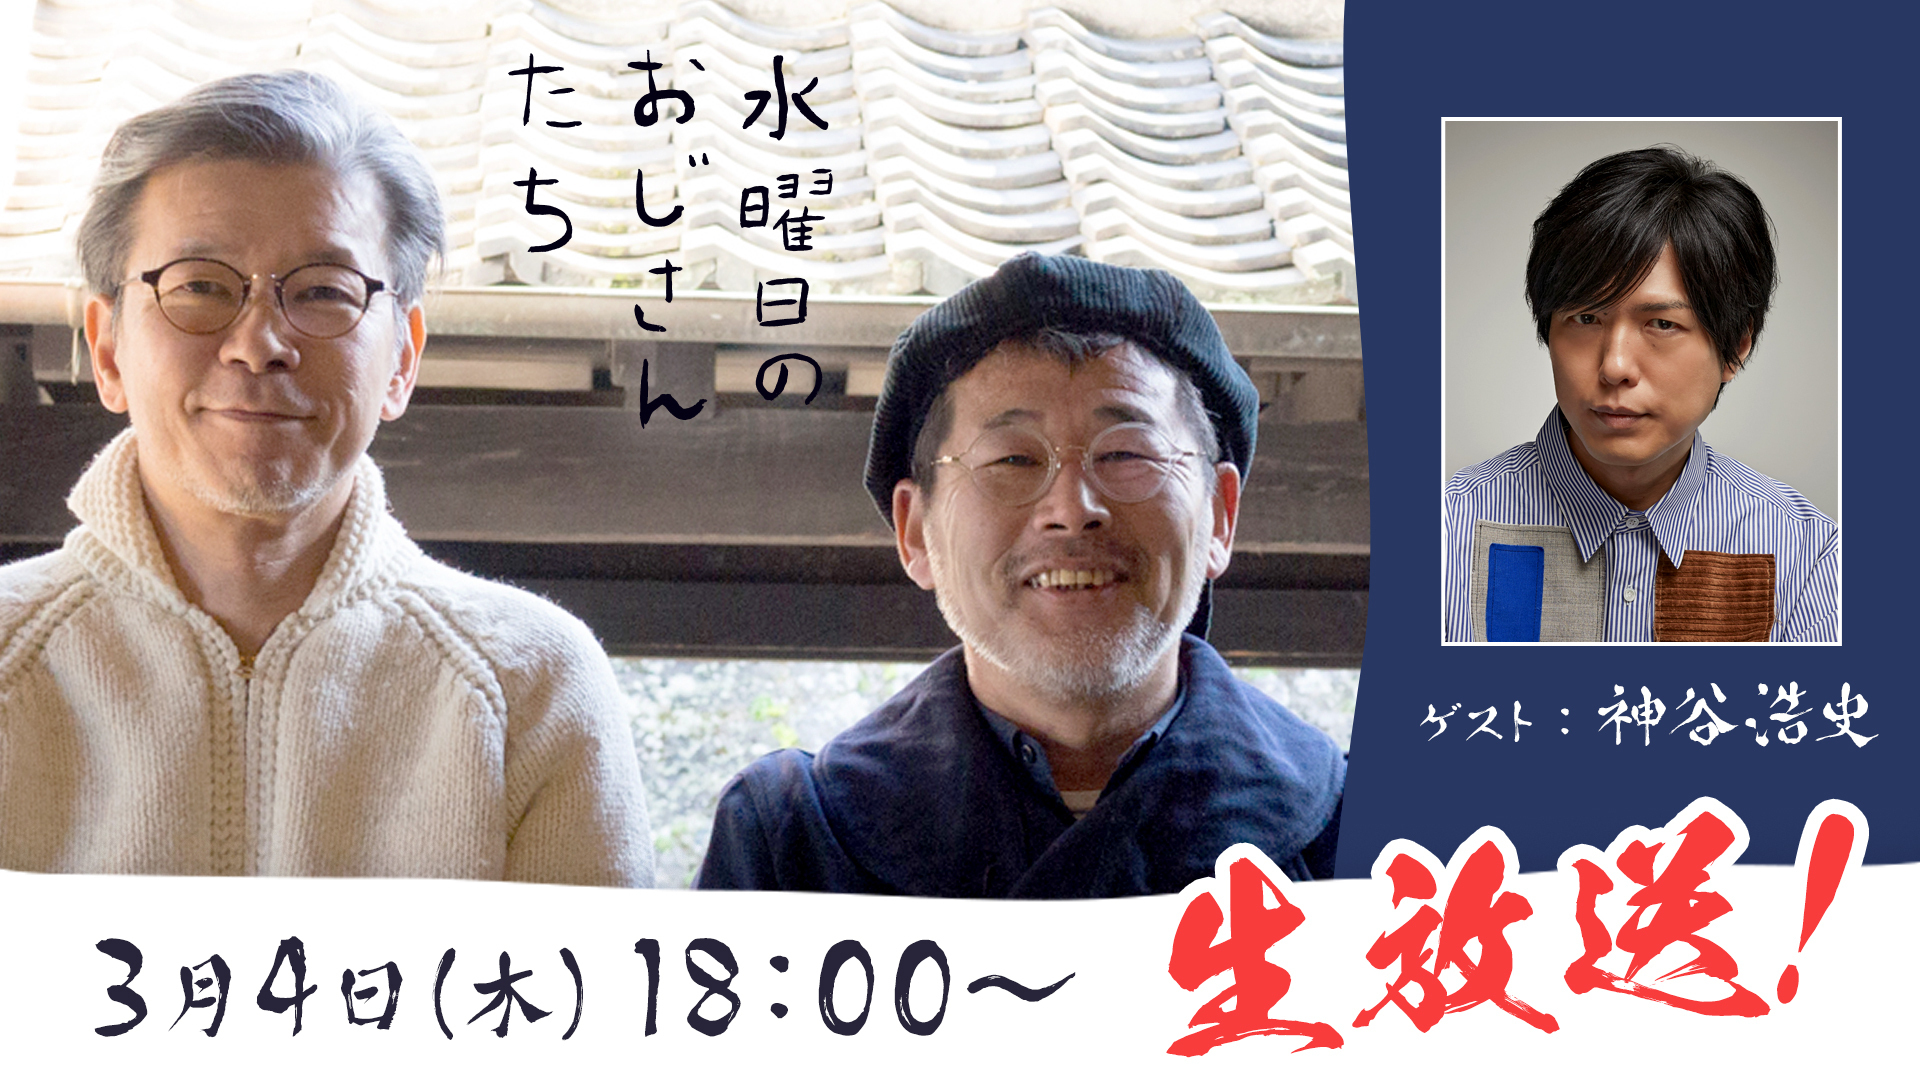 声優の神谷浩史 さんが登場 水曜どうでしょう 幹部のニコニコチャンネル 水曜日のおじさんたち で3月4日 木 18 00 生放送決定 株式会社kadokawaのプレスリリース